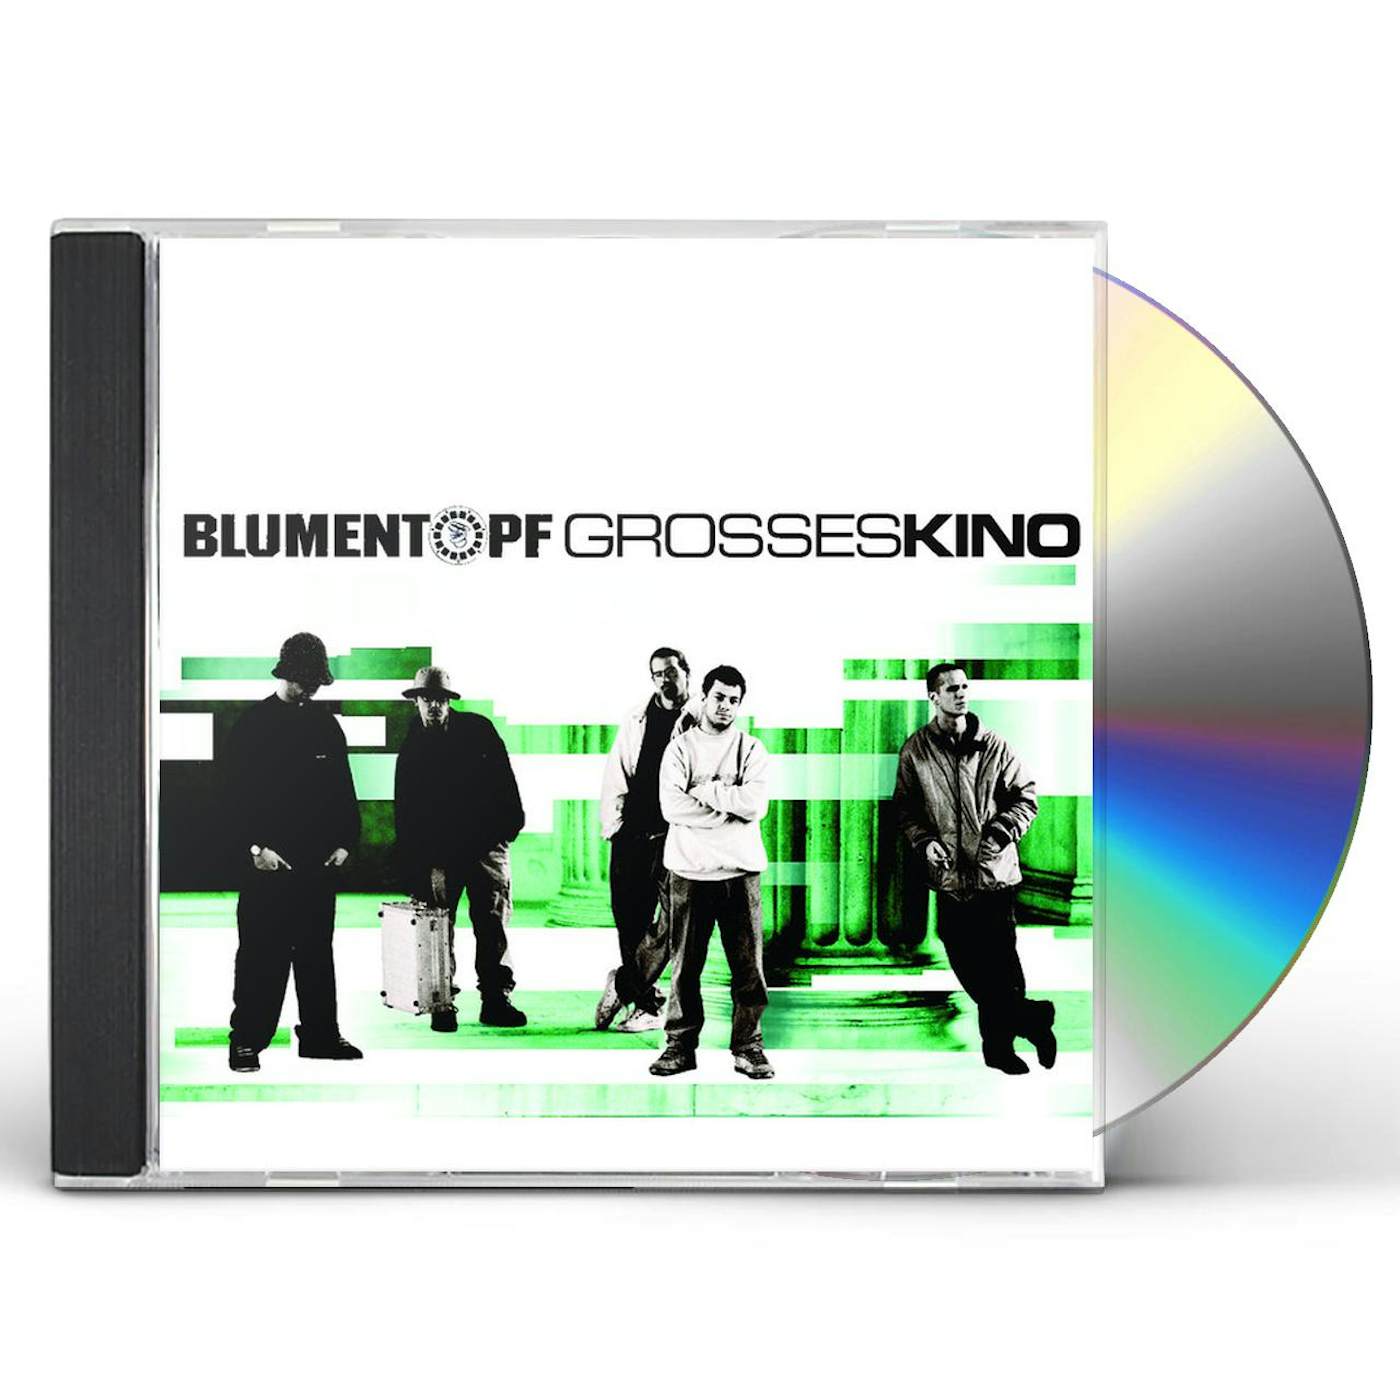 Blumentopf GROSSES KINO CD